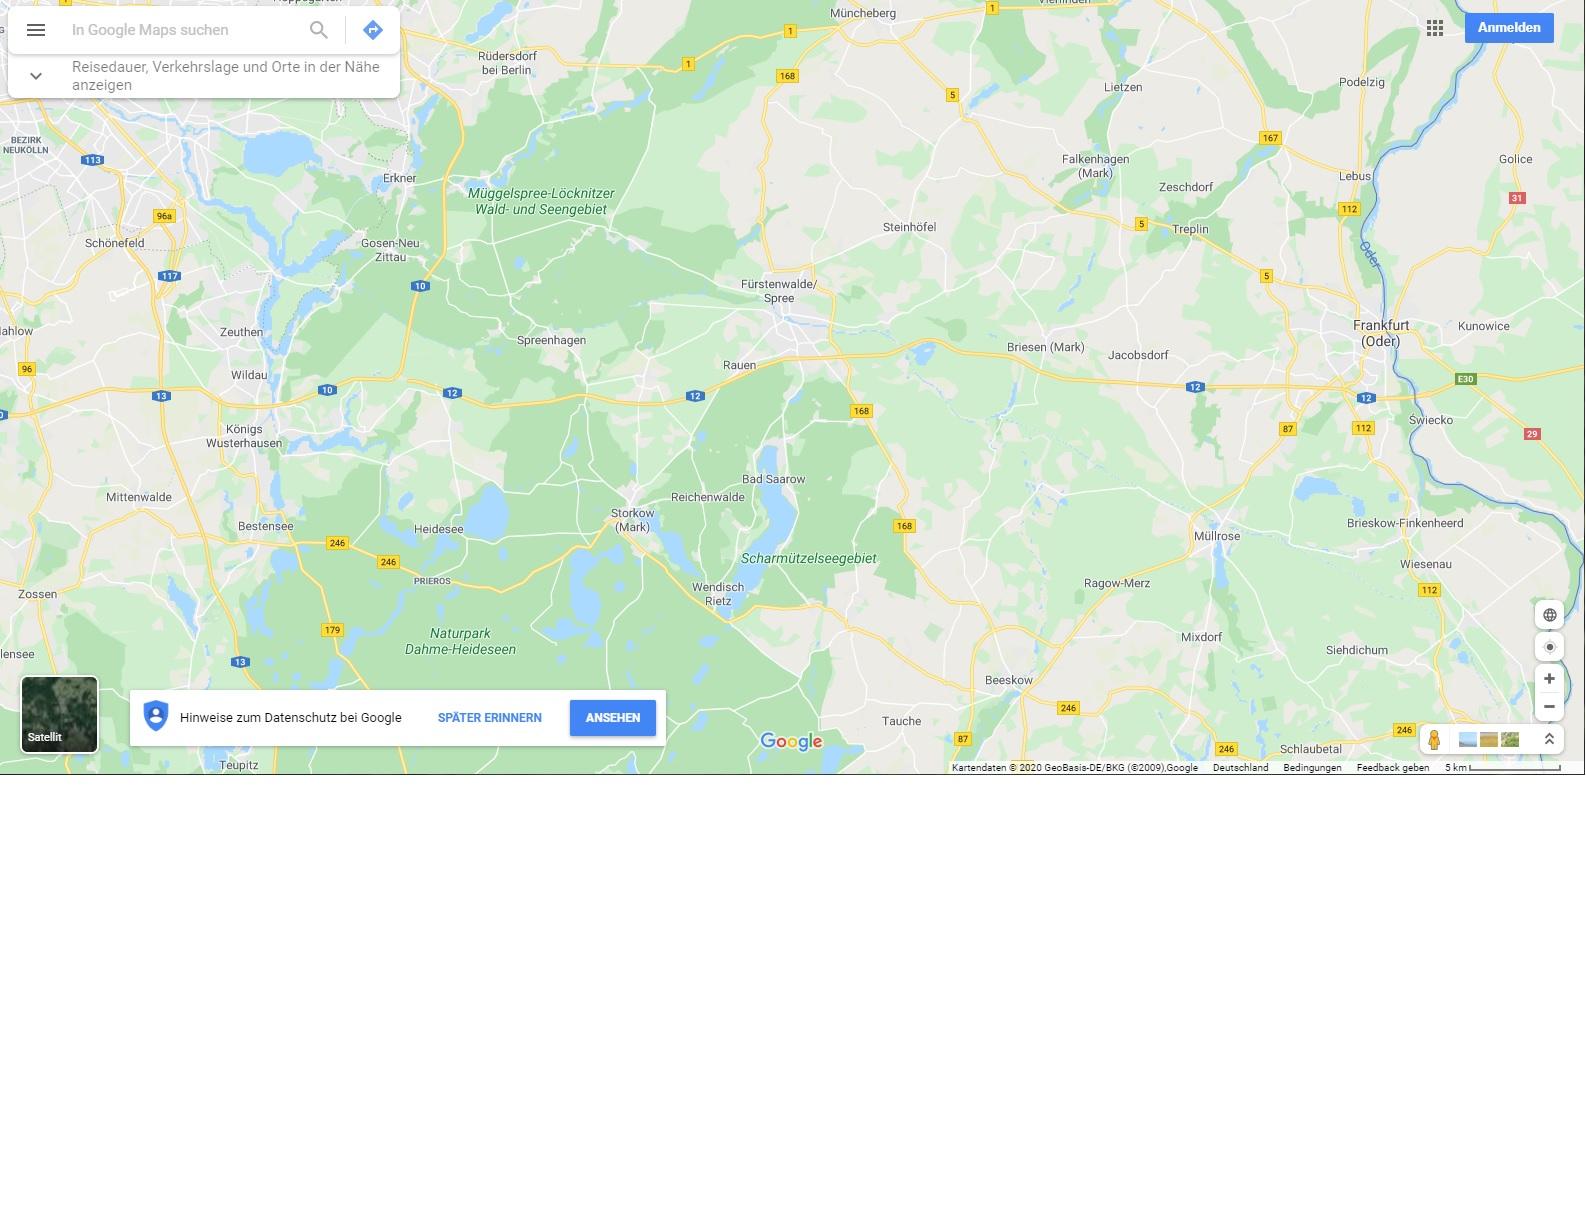 mgliche umfahrungen google maps